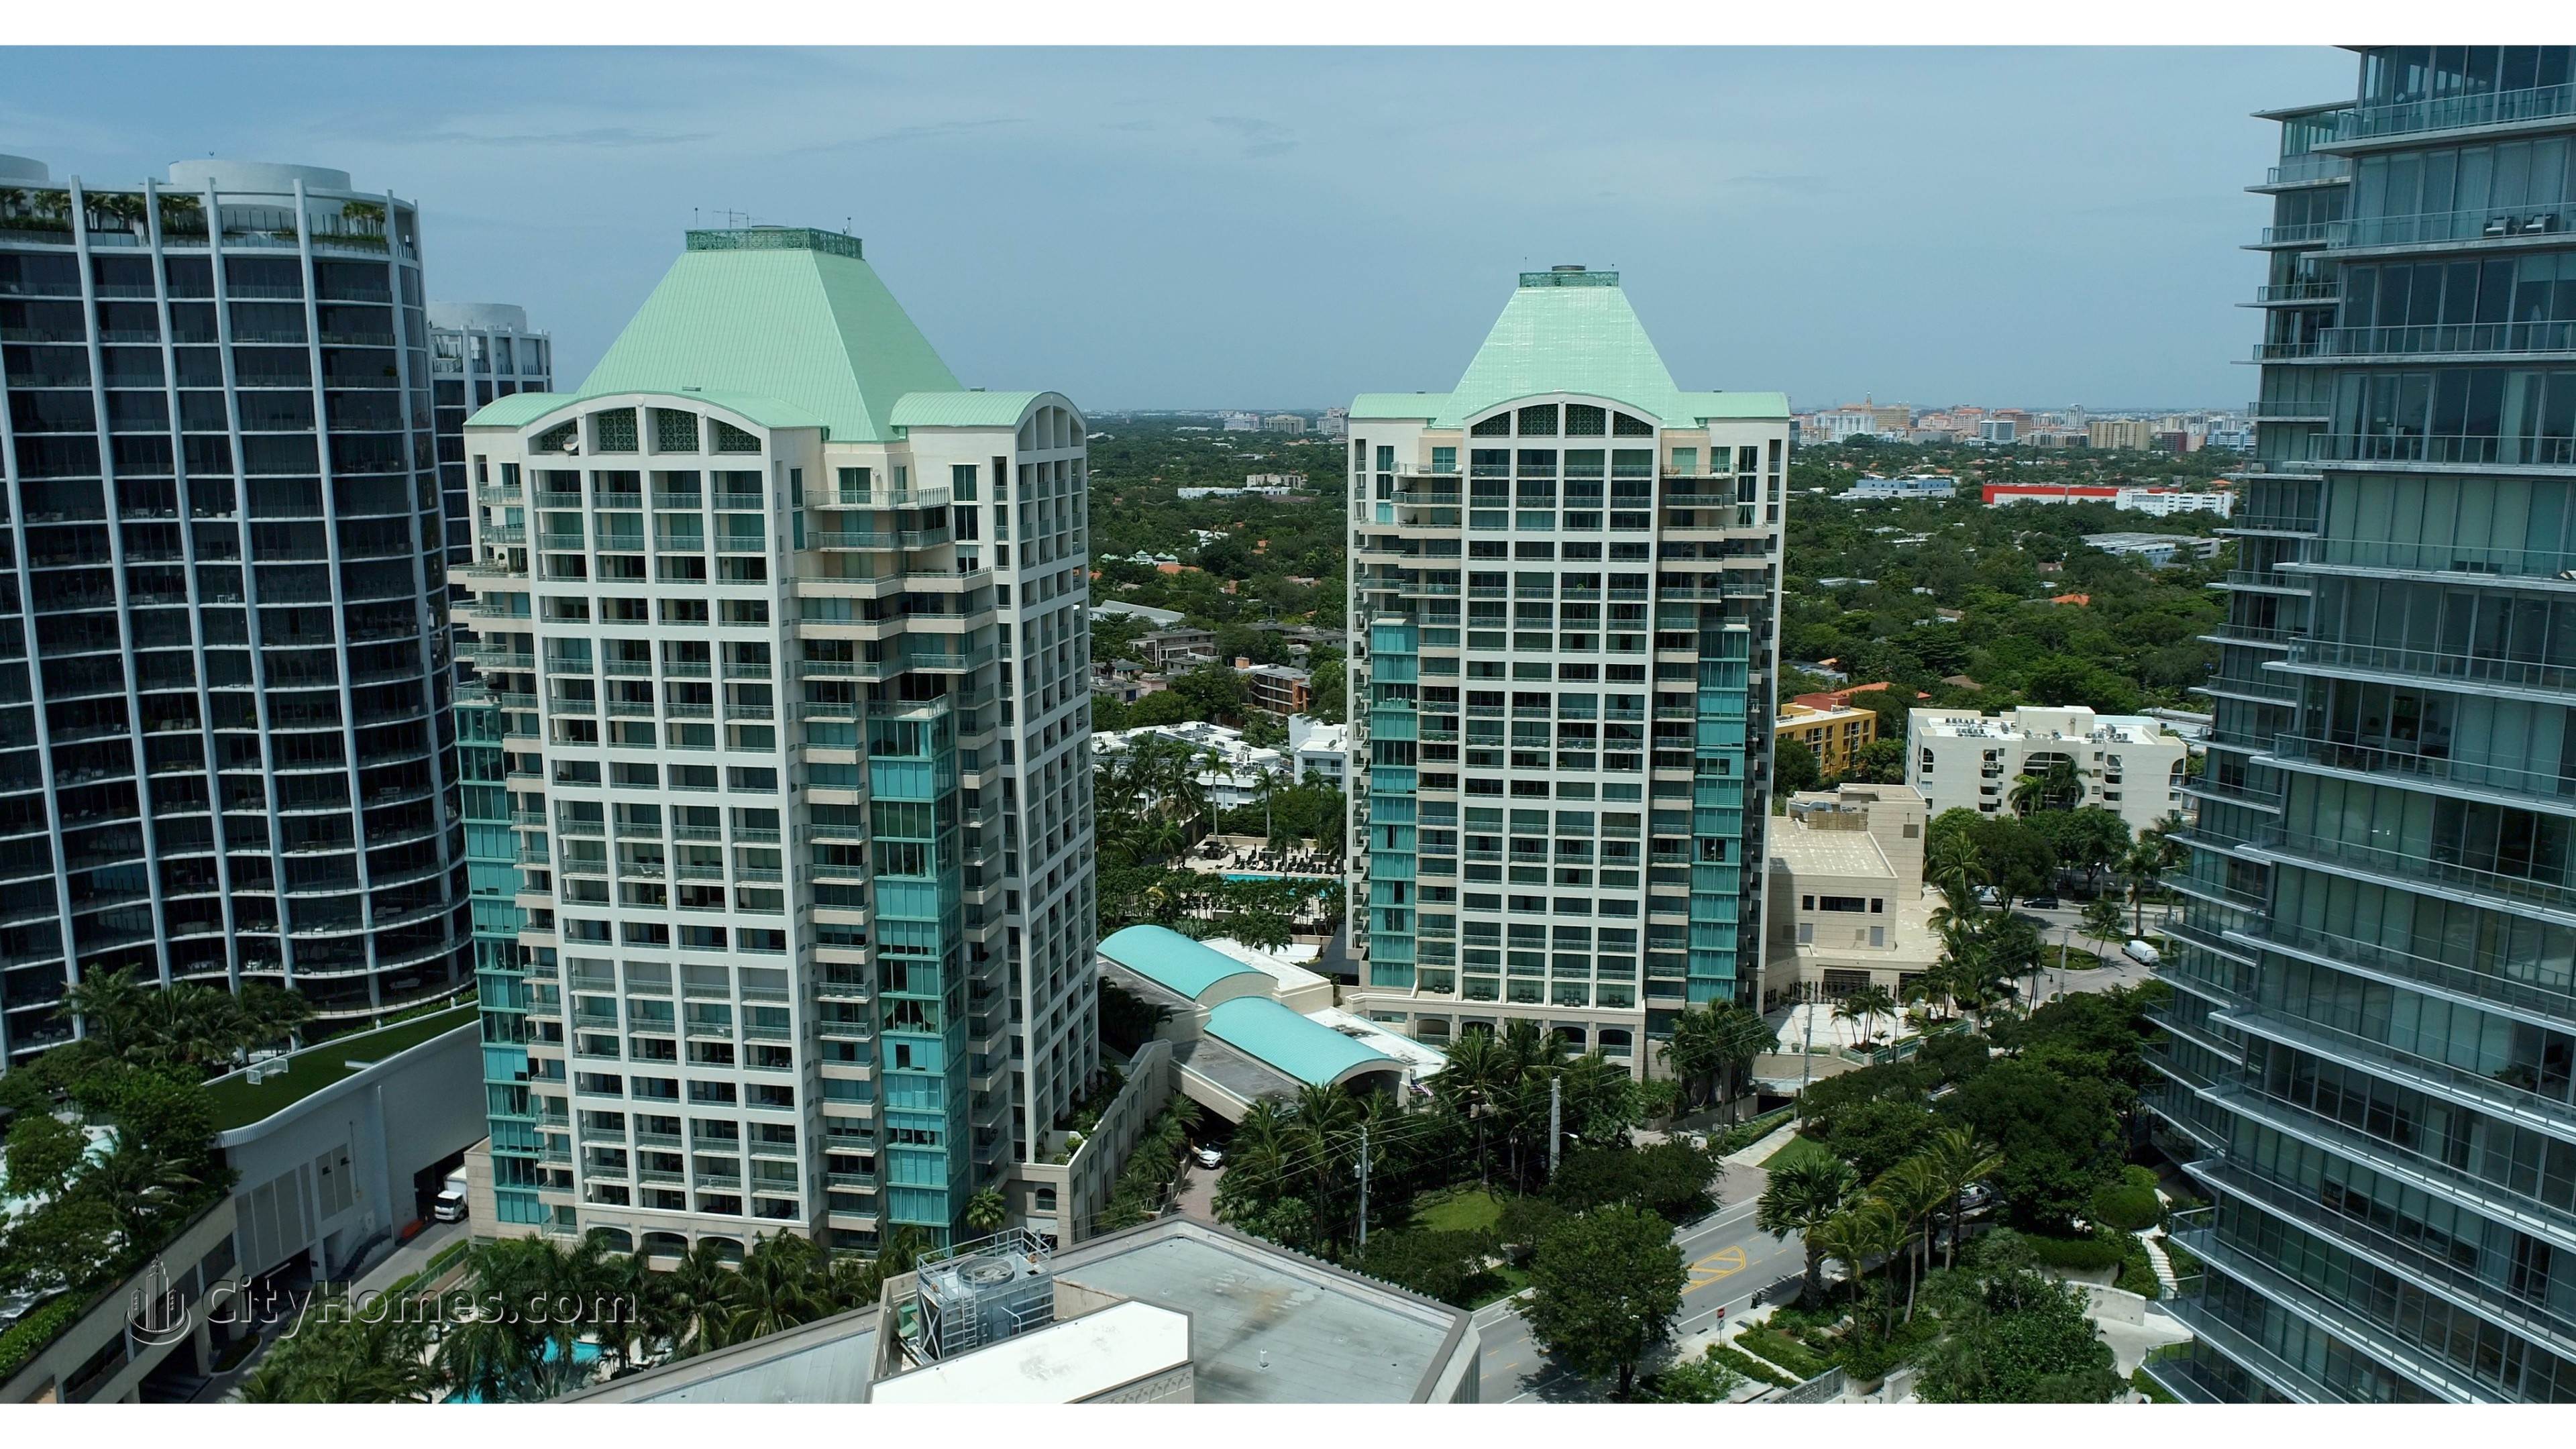 Ritz-Carlton Coconut Grove Gebäude bei 3300 And 3350 SW 27th Avenue, Miami, FL 33133